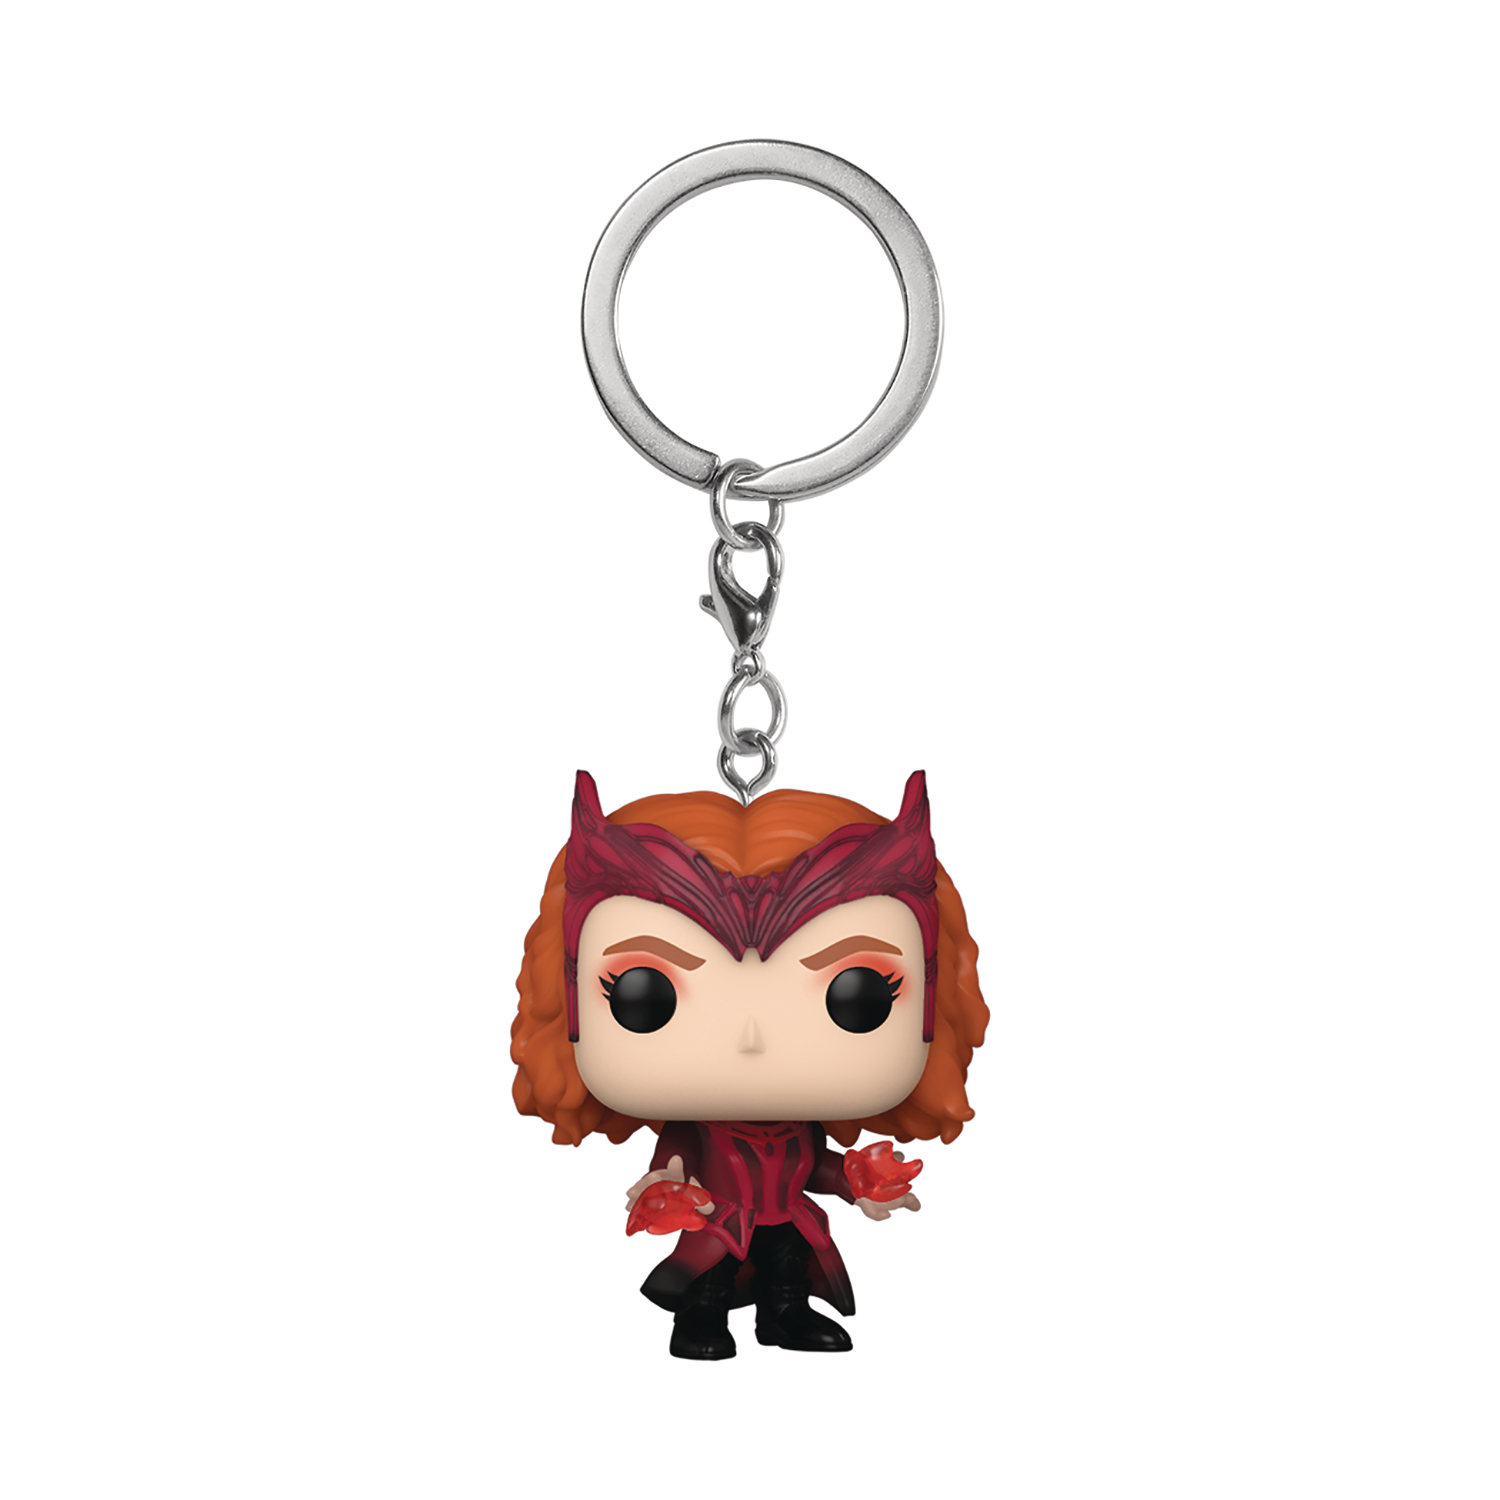 Scarlet Witch Pocket Pop! Keychain